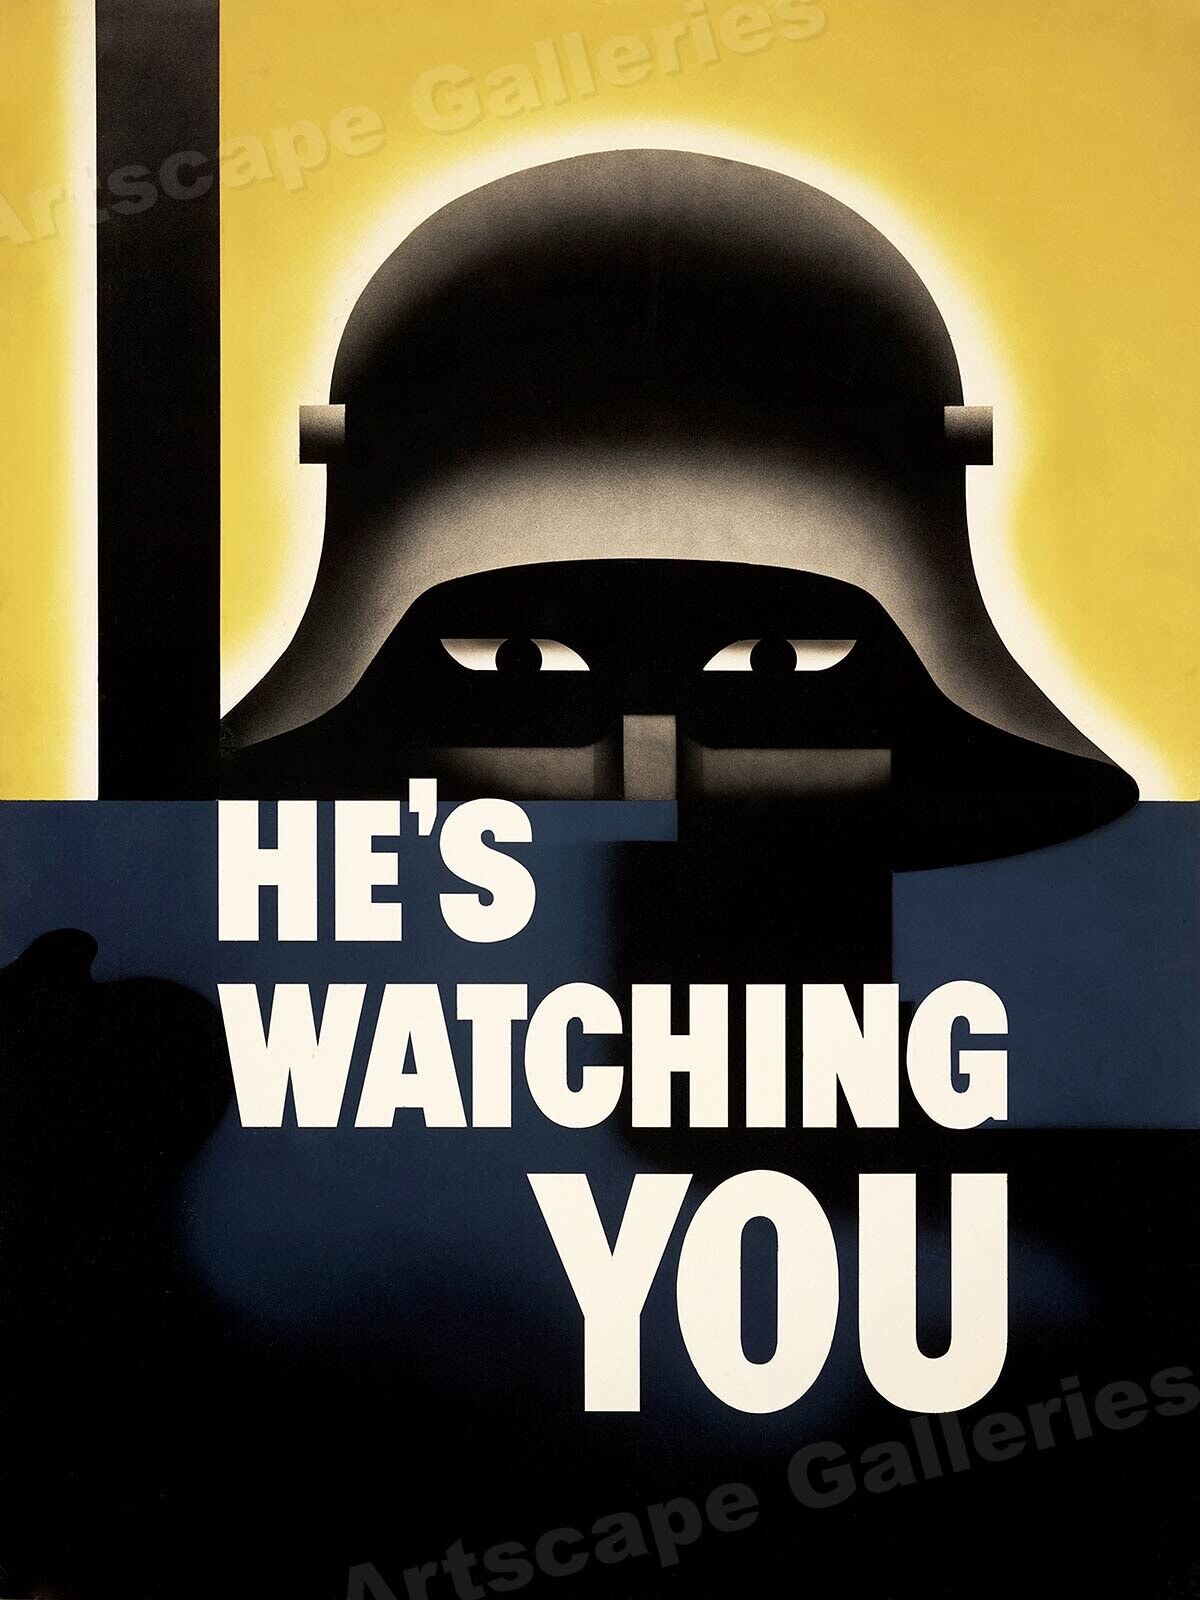 He's Watching You 1942 Army Spy Espionage WW2 Poster - 20x28